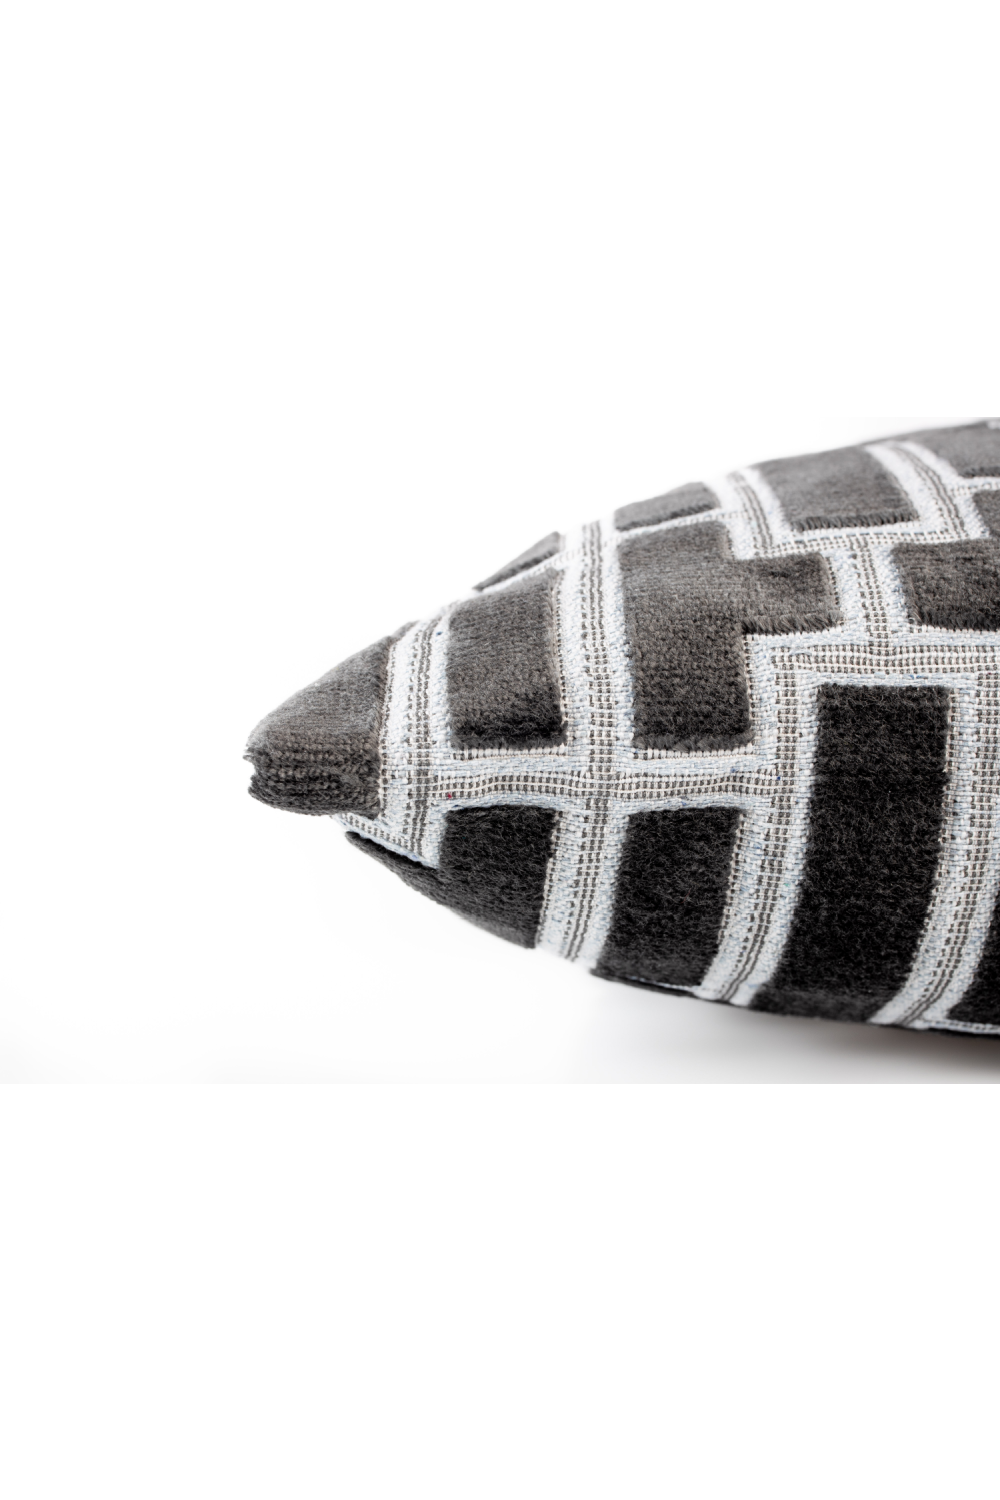 Black Contemporary Throw Pillows (2) | Zuiver Scape | Dutchfurniture.com